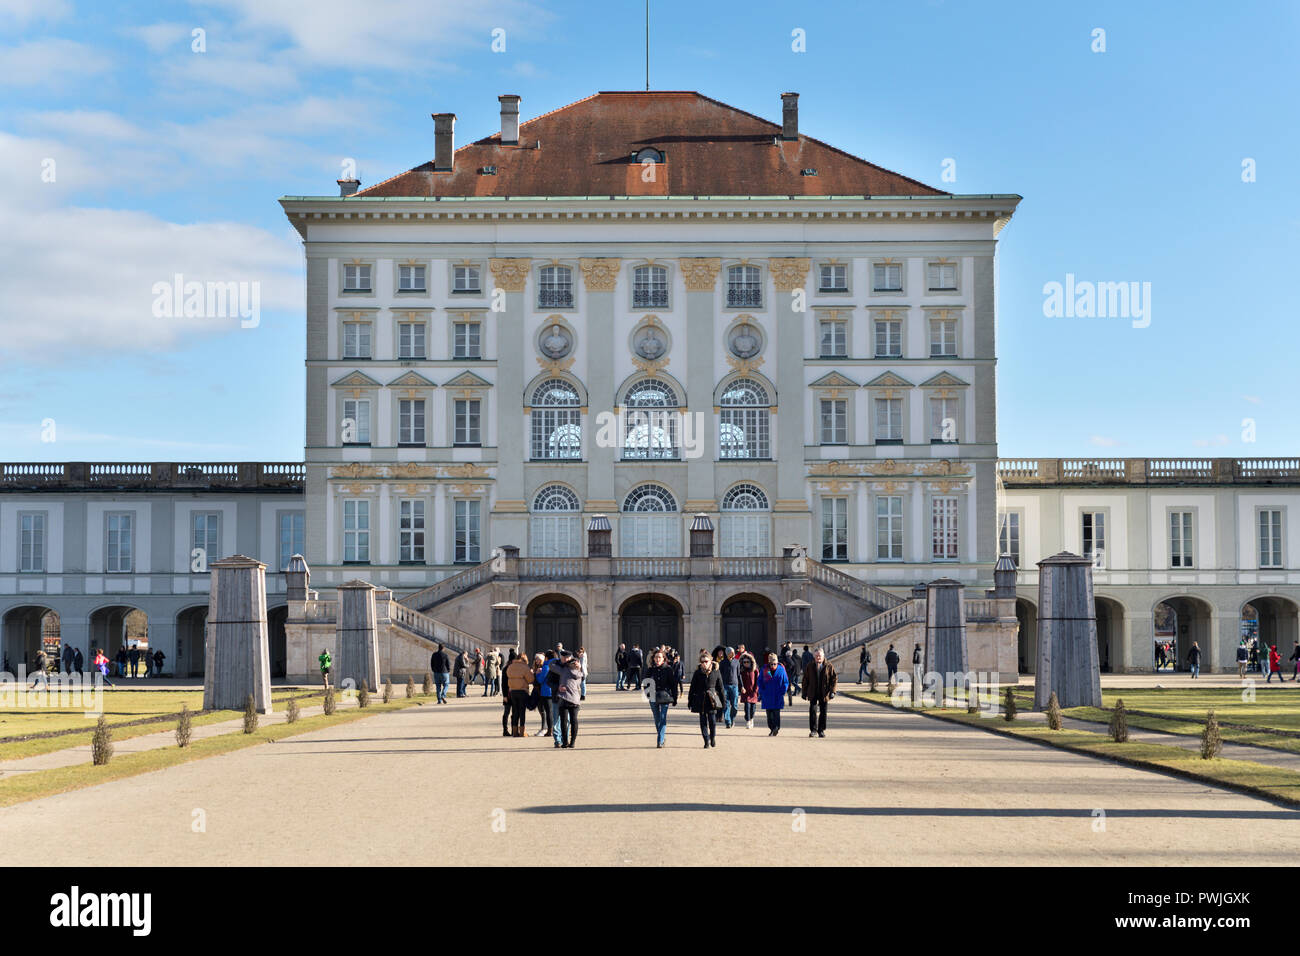 Nymphenburg Palace, Munich, Germany Stock Photo